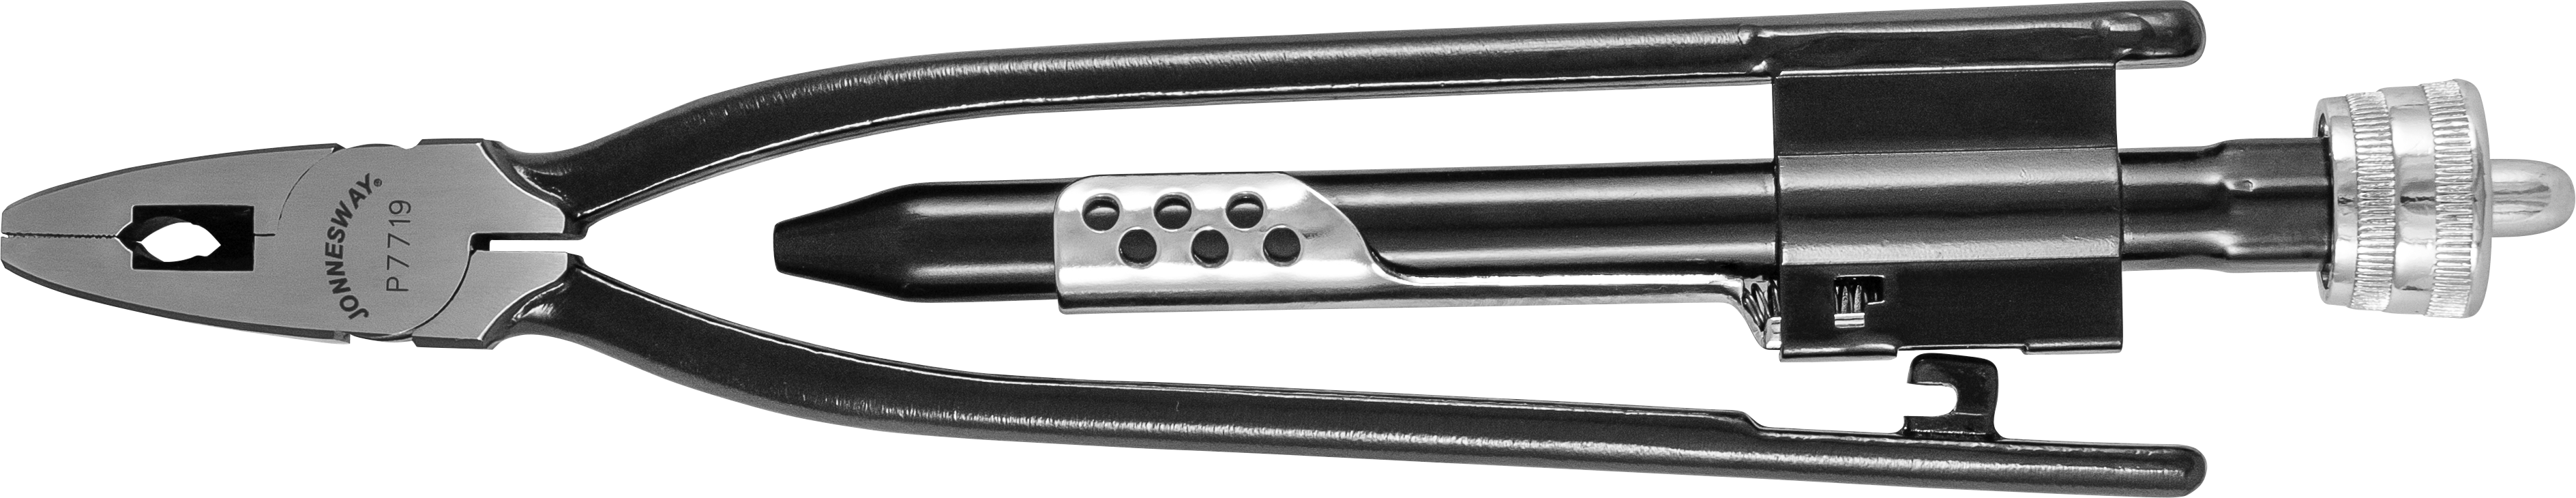 Плоскогубцы для скручивания проволоки (твистеры) 225 мм P7719